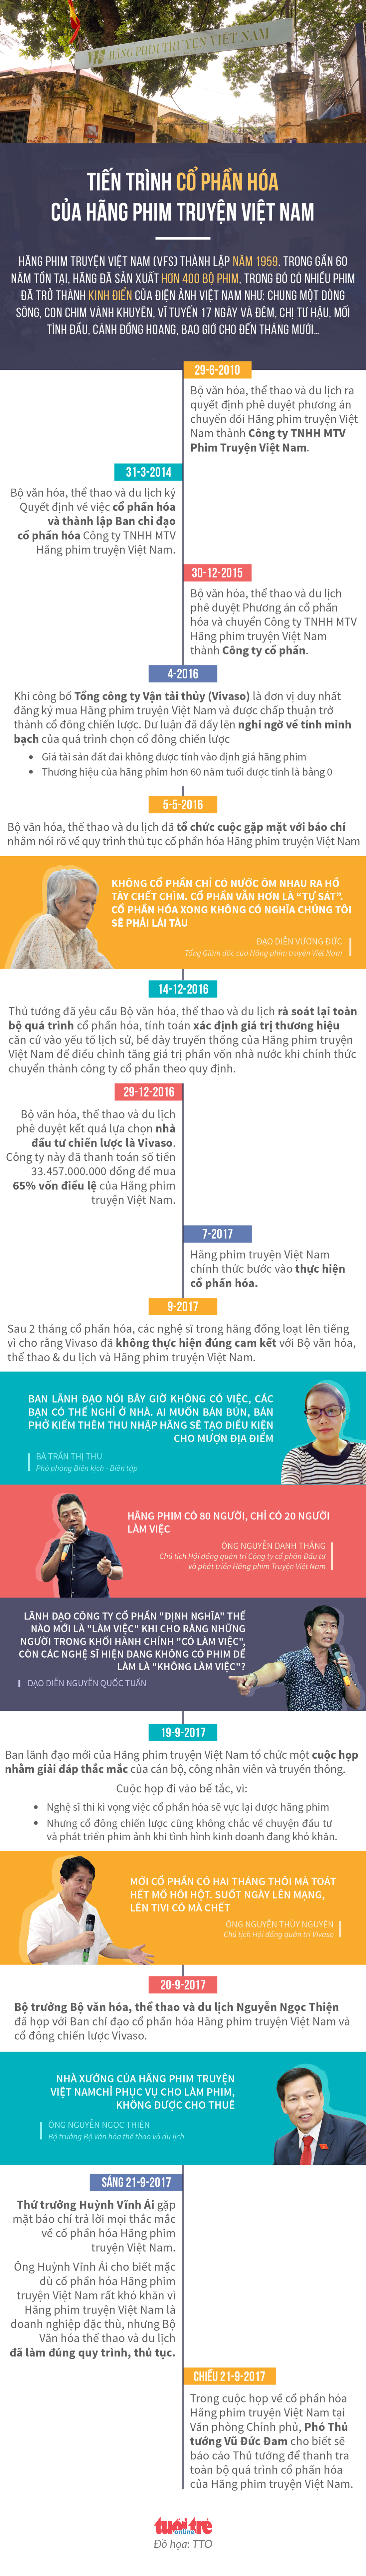 Nghệ sĩ Hãng phim truyện Việt Nam chạy Grab, bán hàng online, bộ vẫn nói chờ- Ảnh 4.